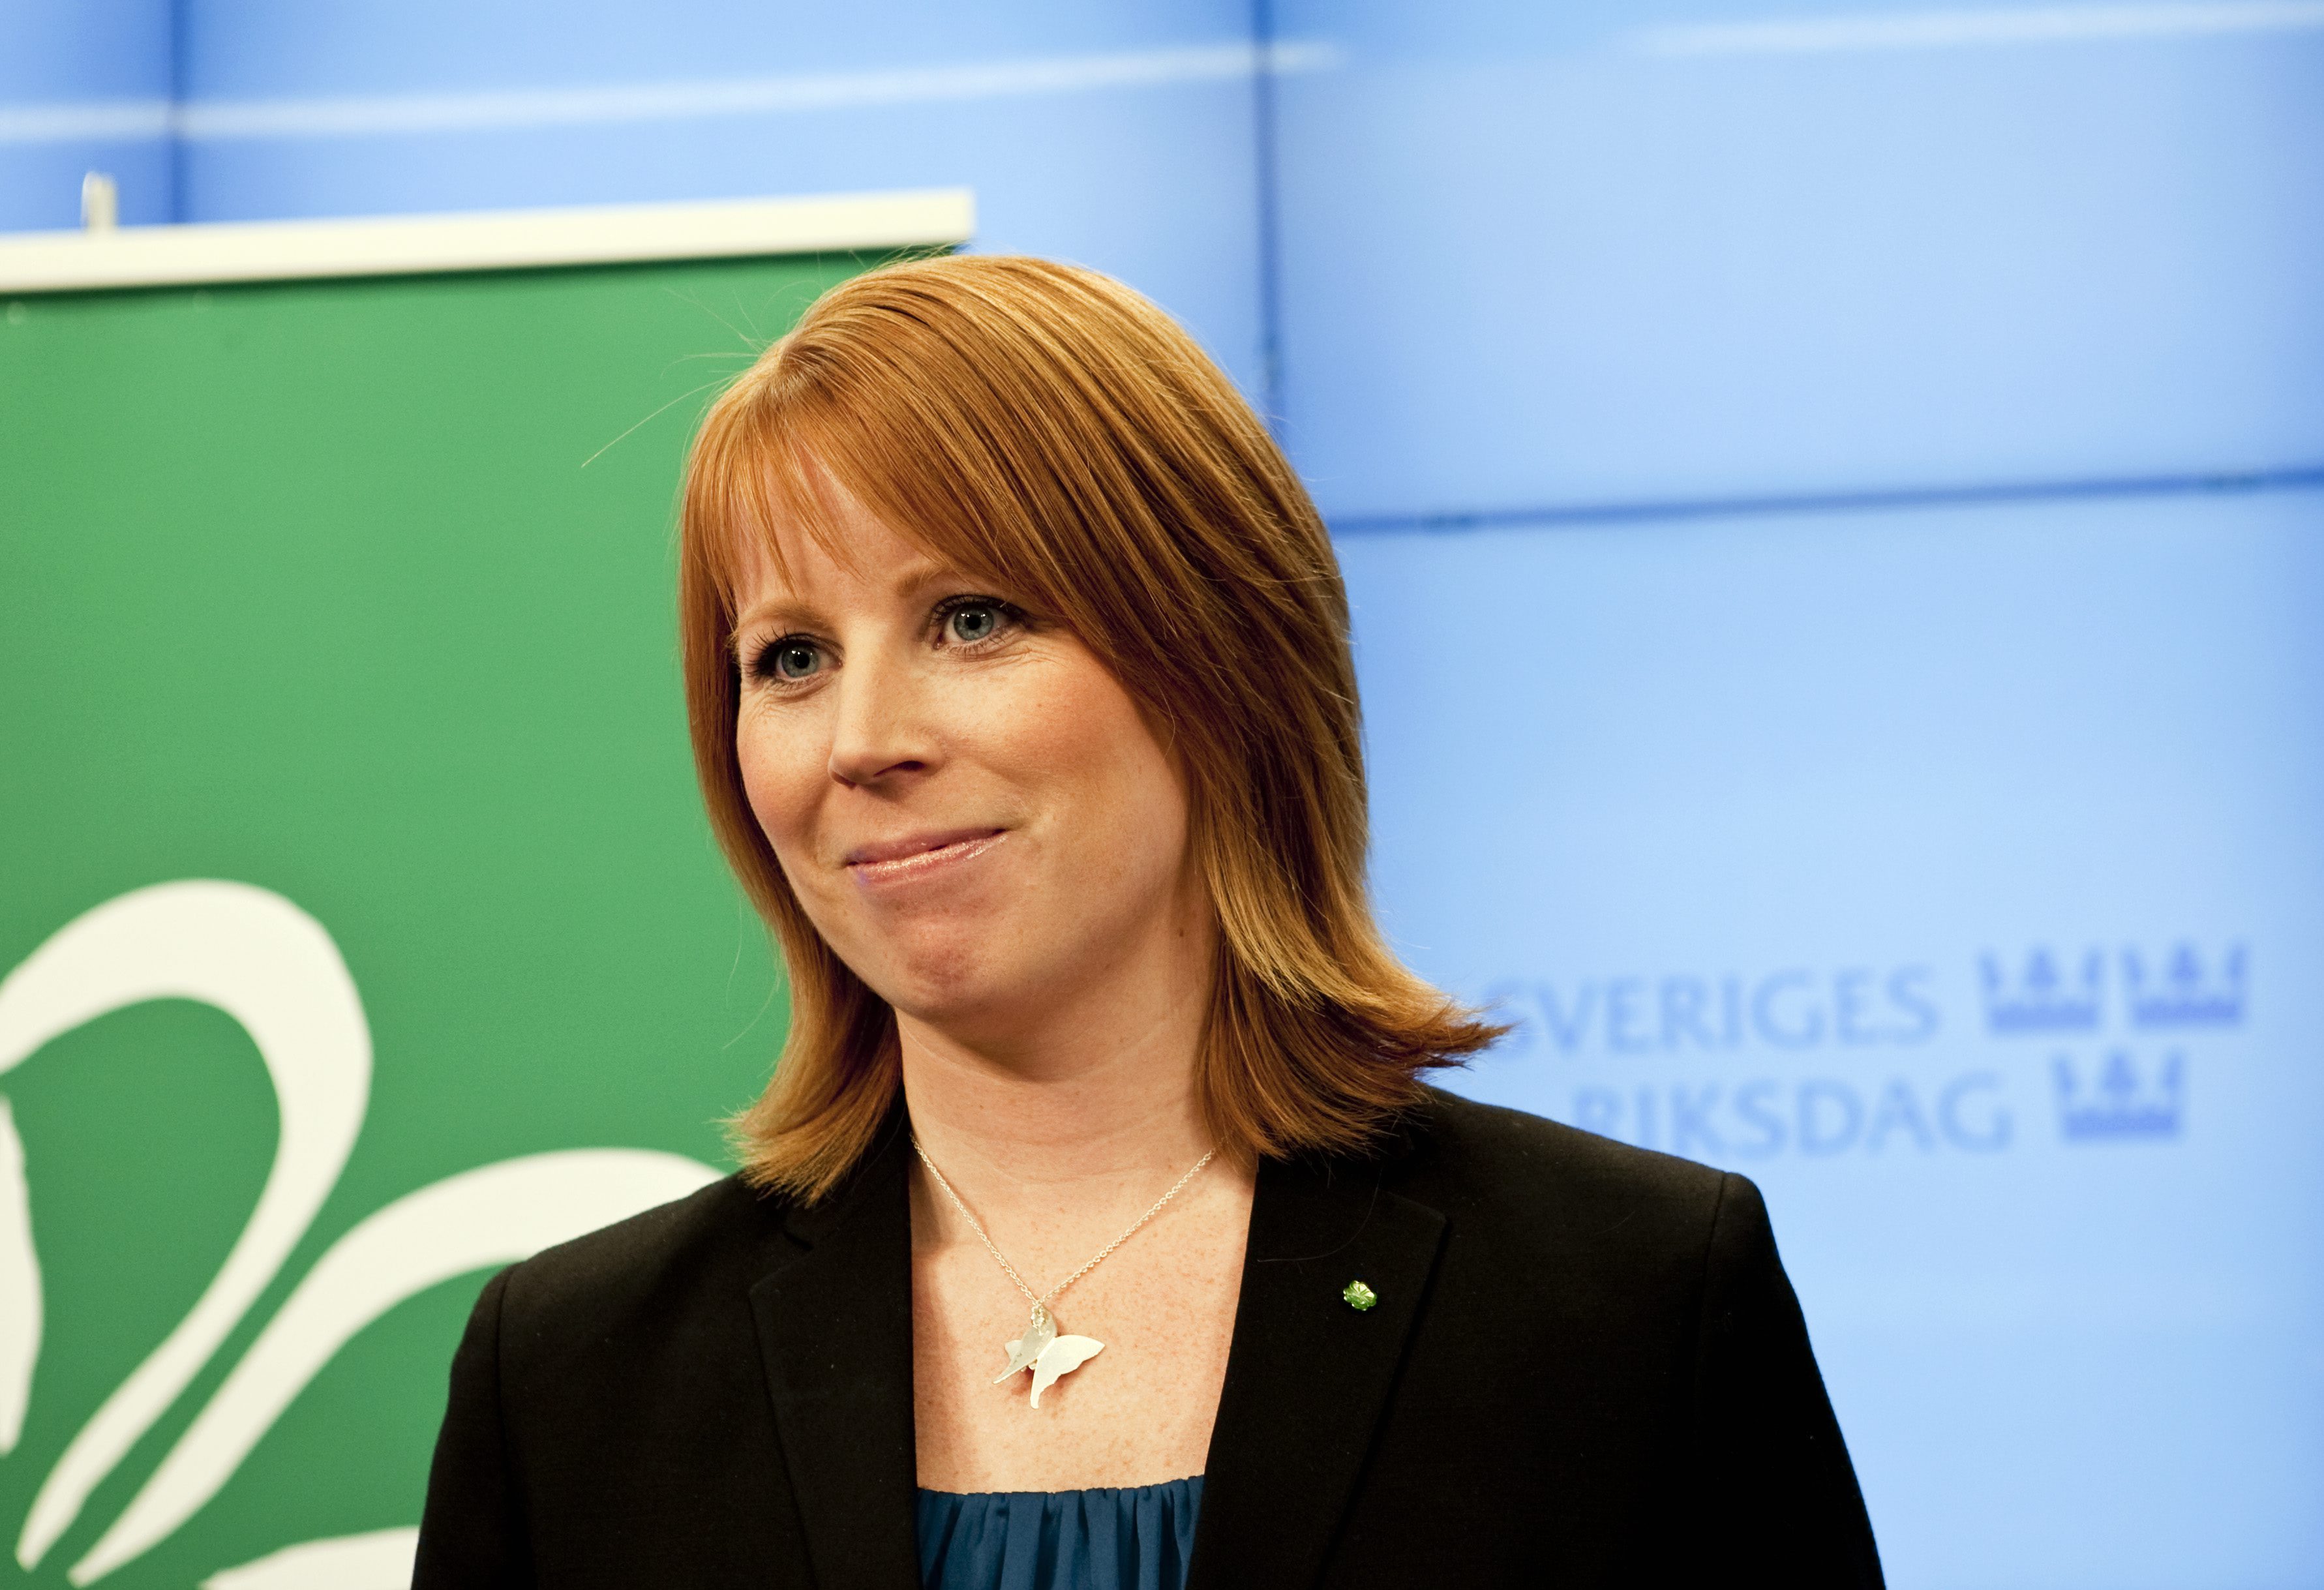 Centerpartiets ledare Annie Lööf fick väljarna på sig när hon föreslog att ungdomarna skulle få 75 procent av ingångslönen.